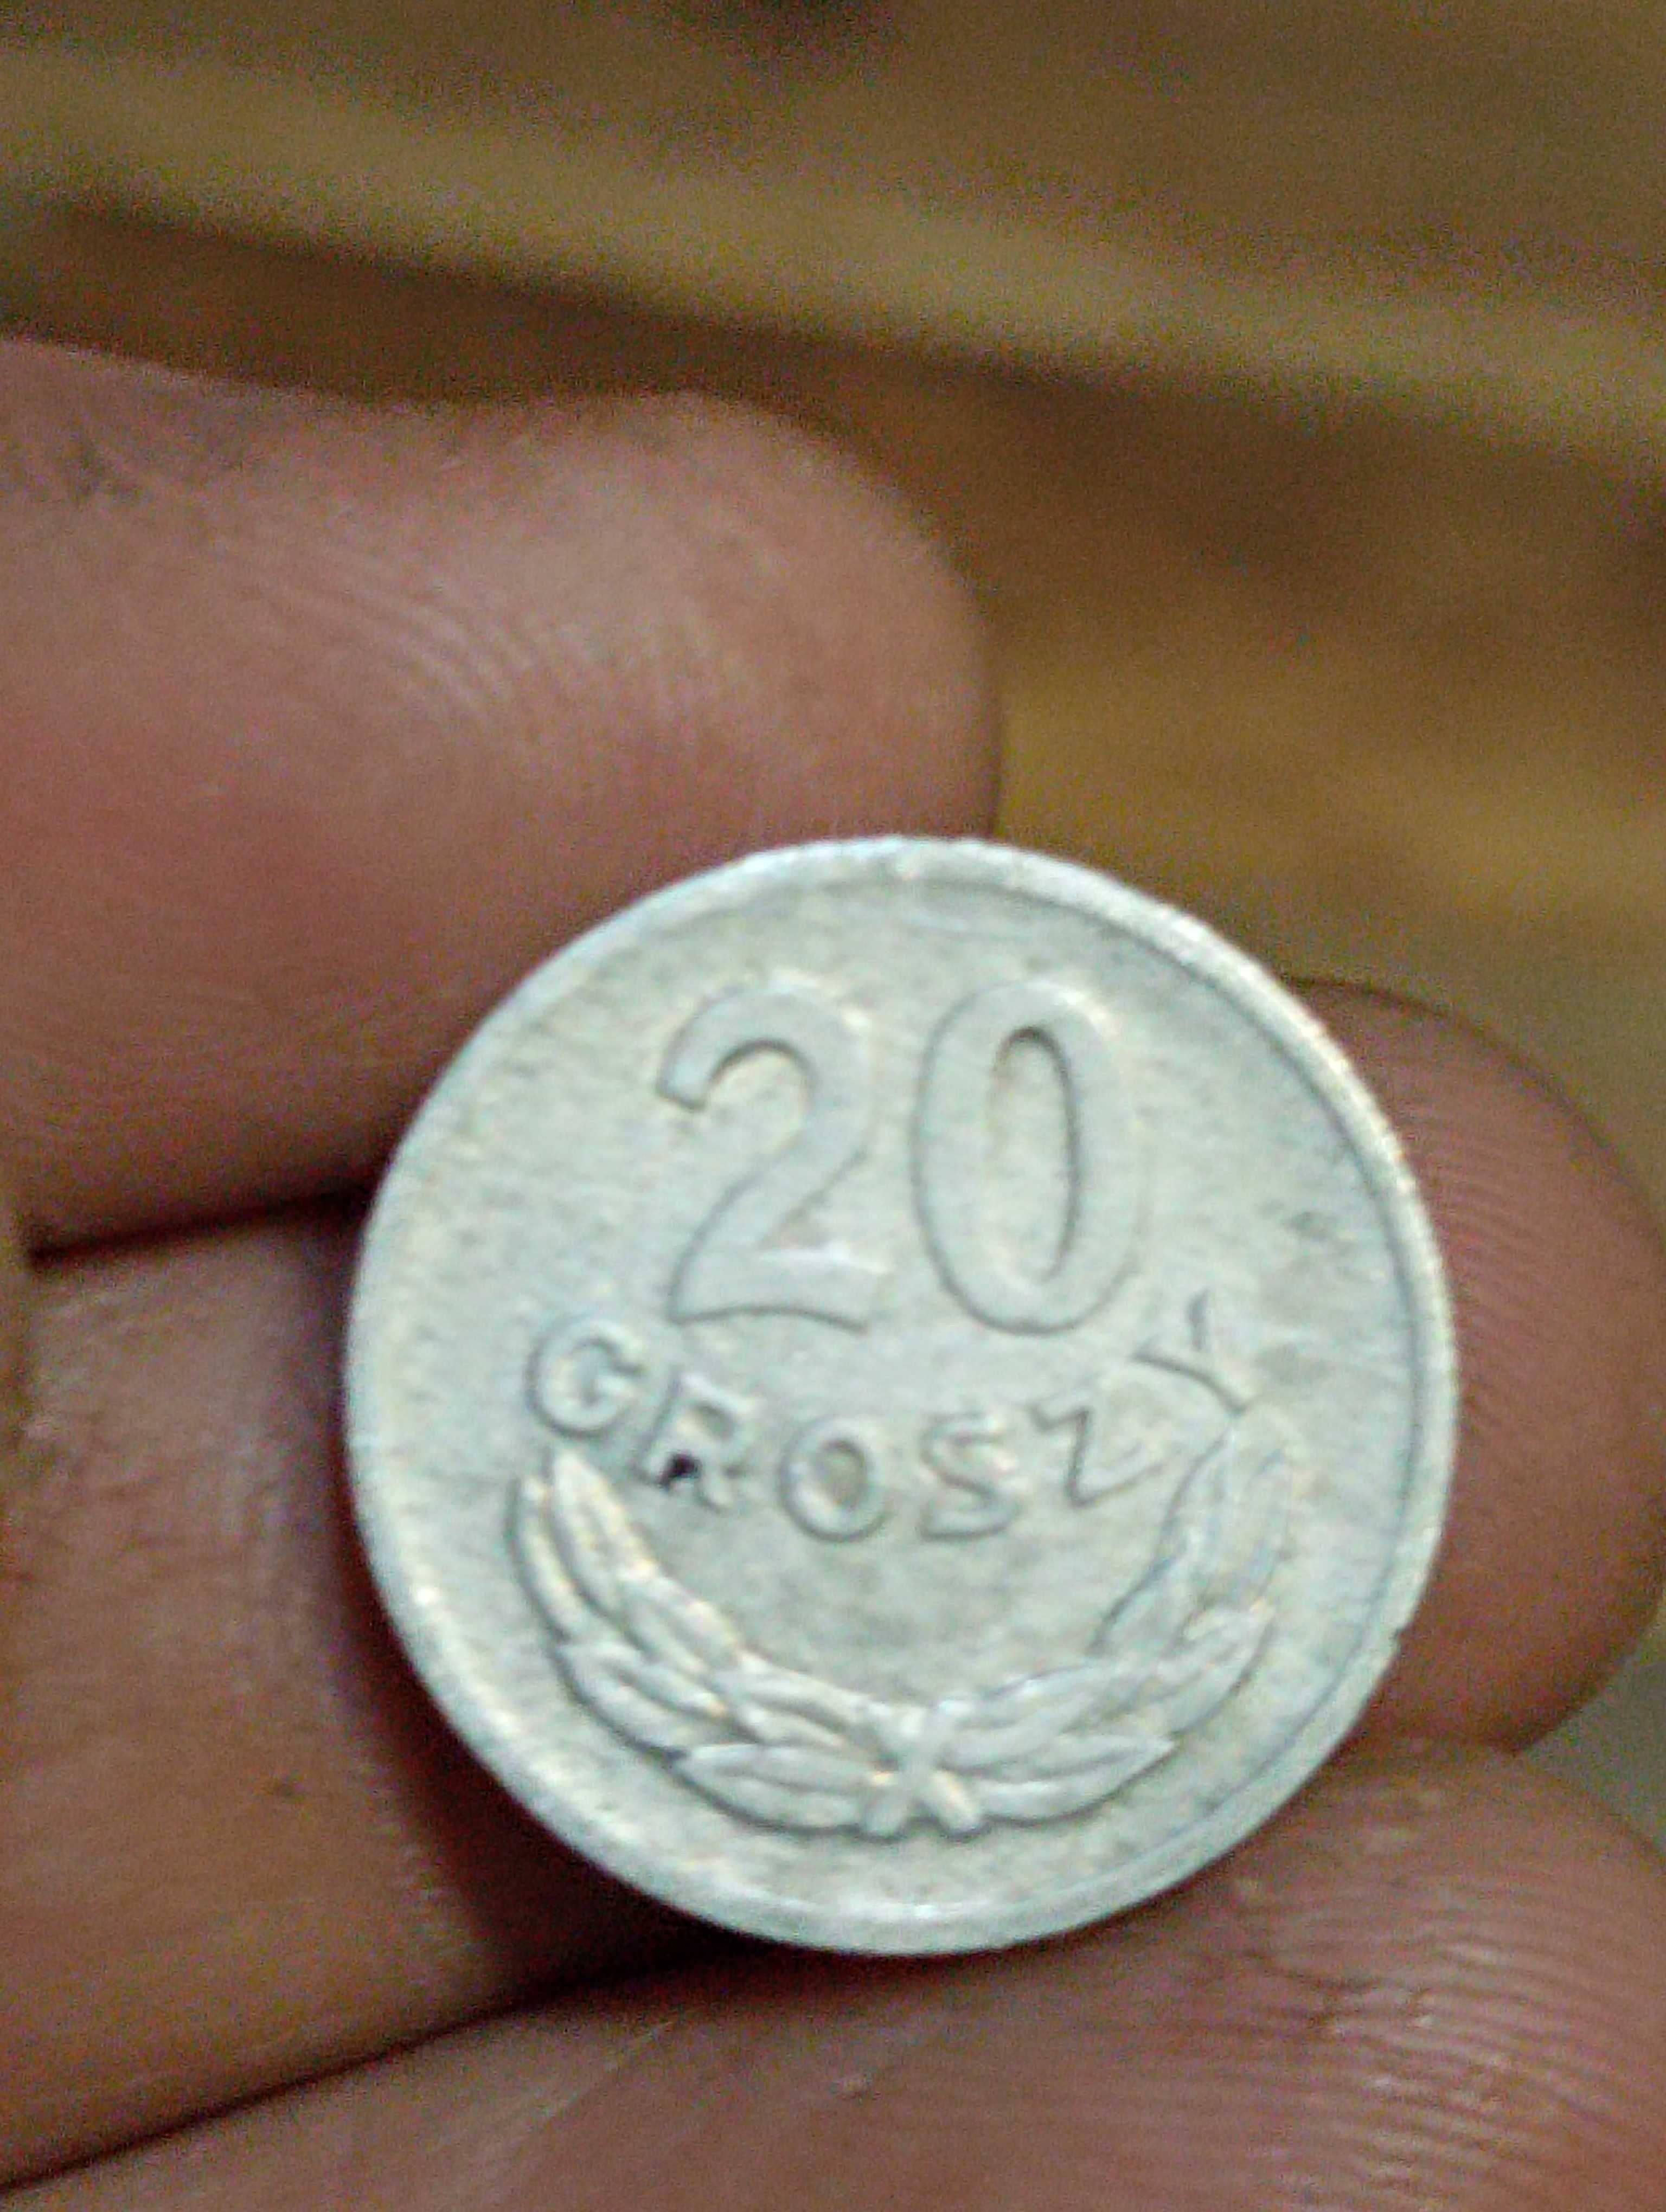 Moneta druga 20 groszy 1973 rok bzm